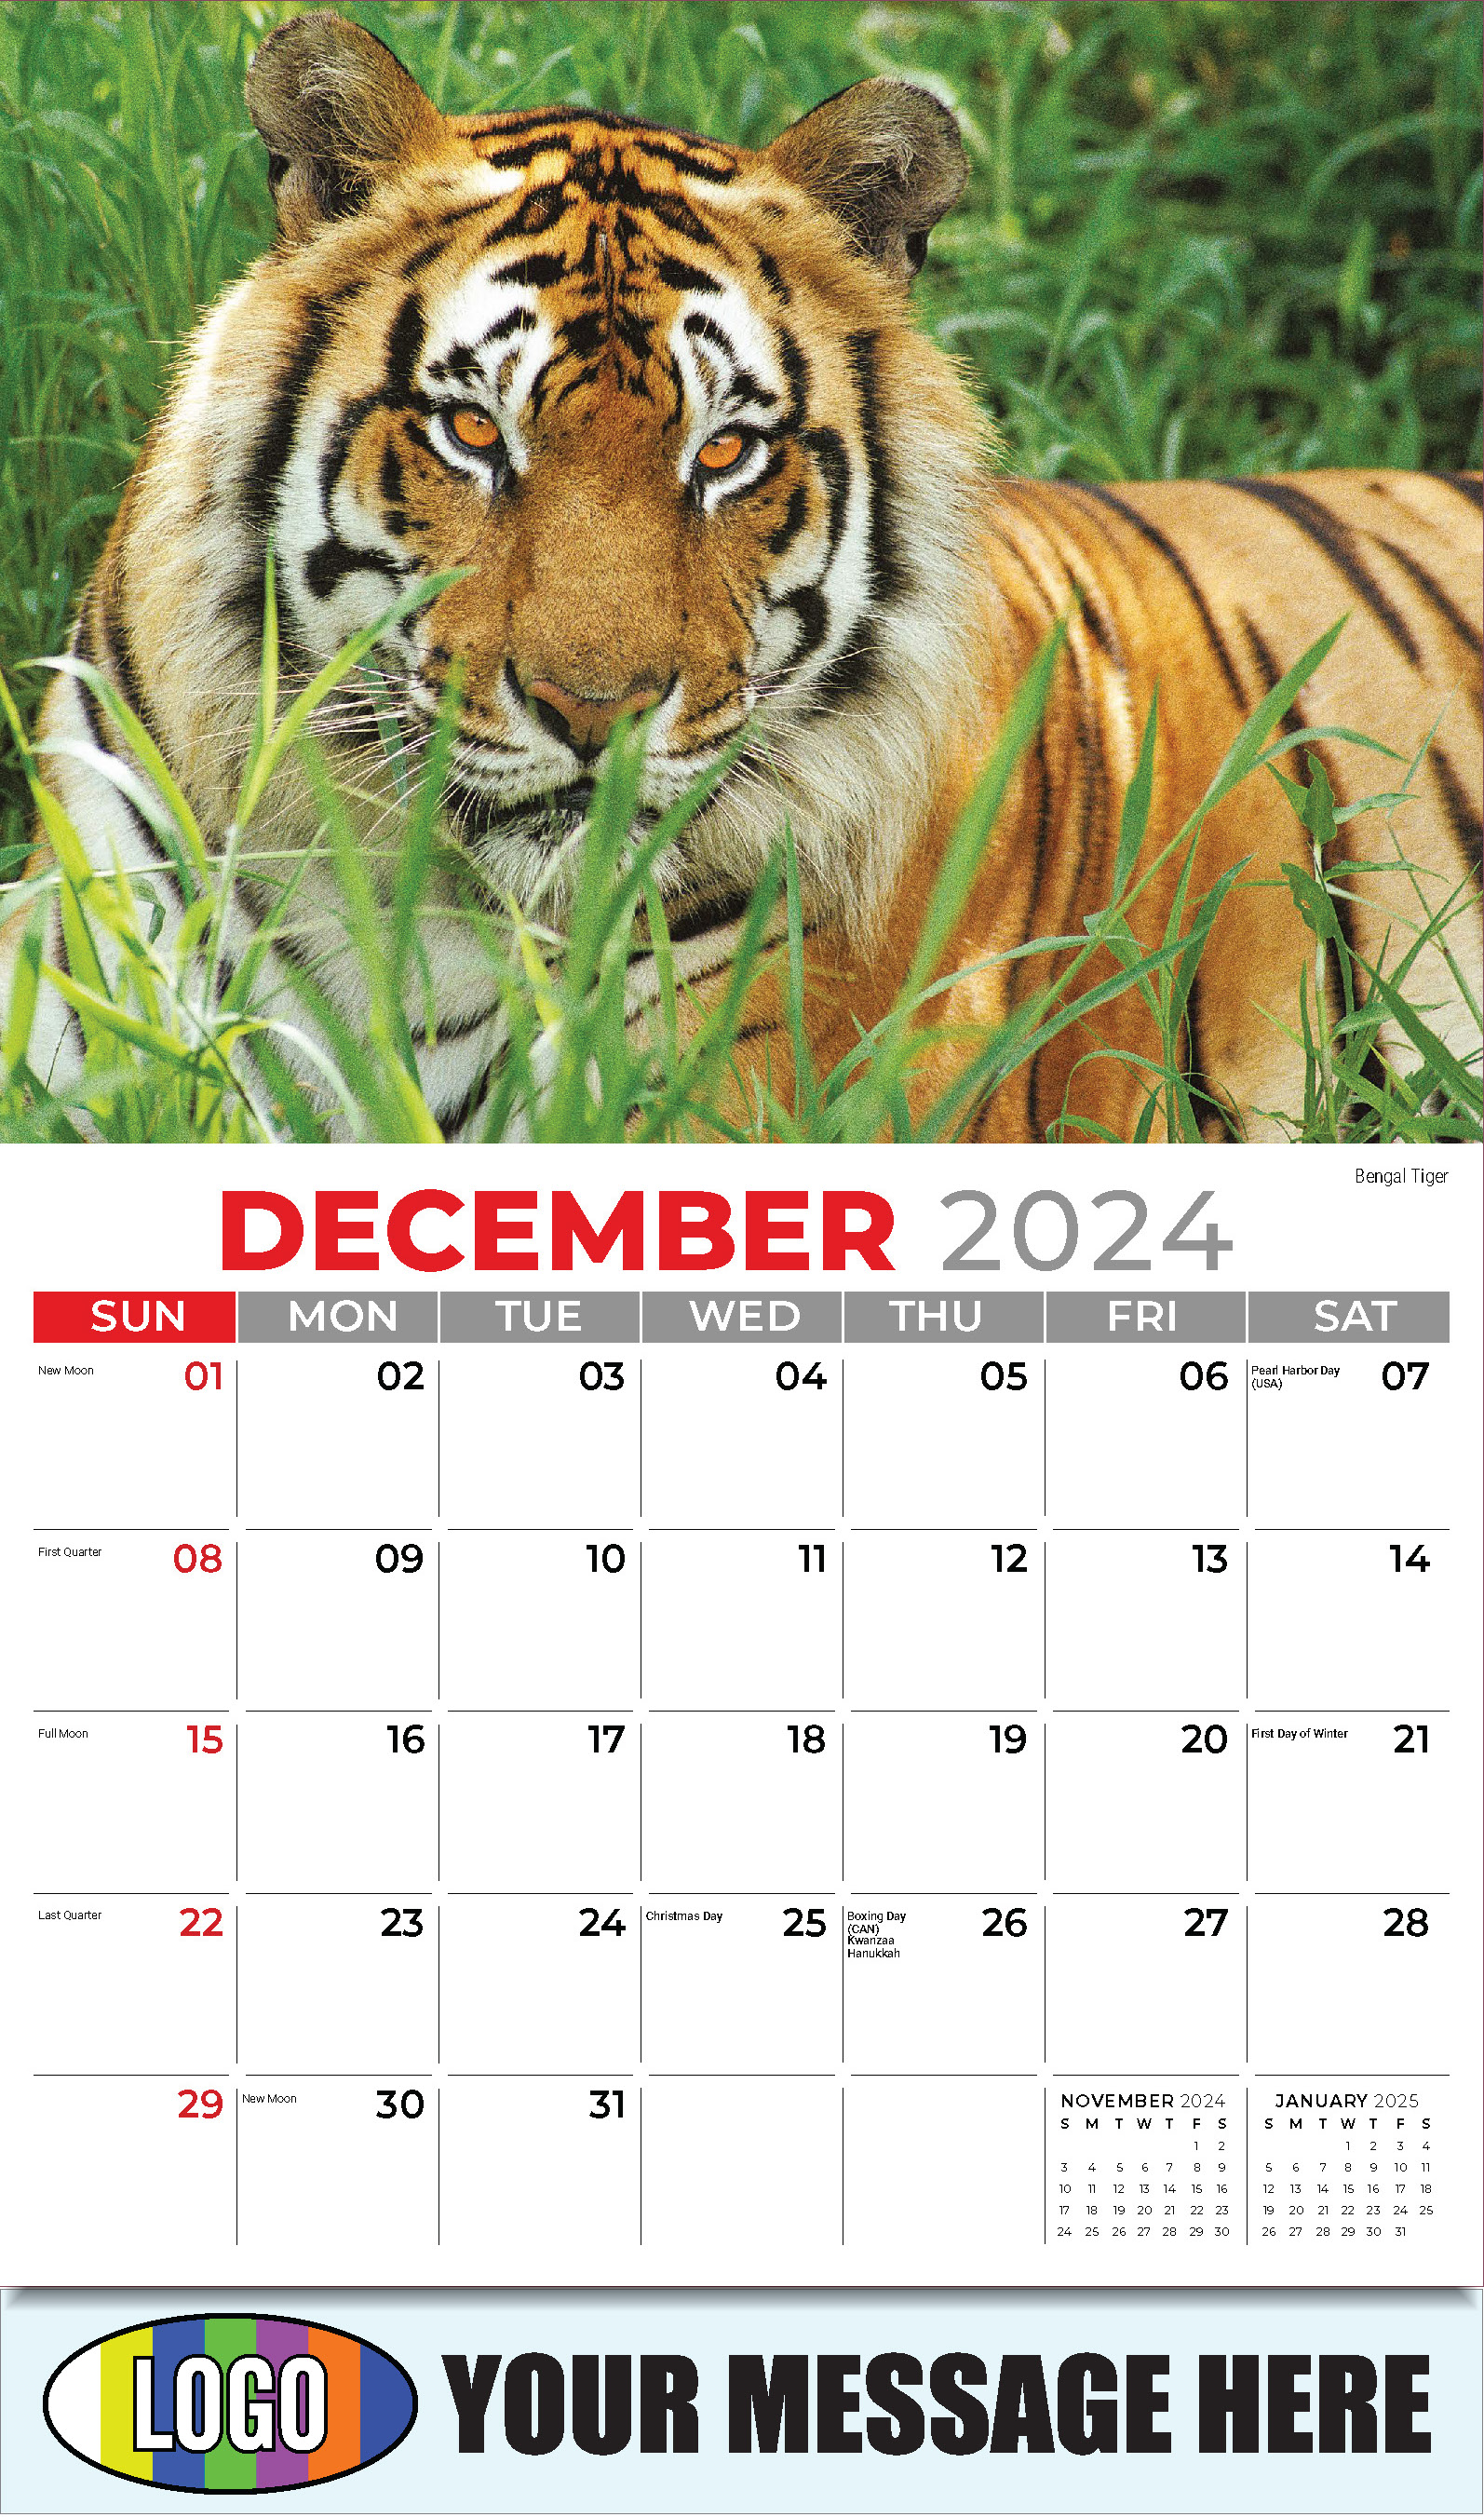 International Wildlife 2025 Business Advertising Wall Calendar - December_a